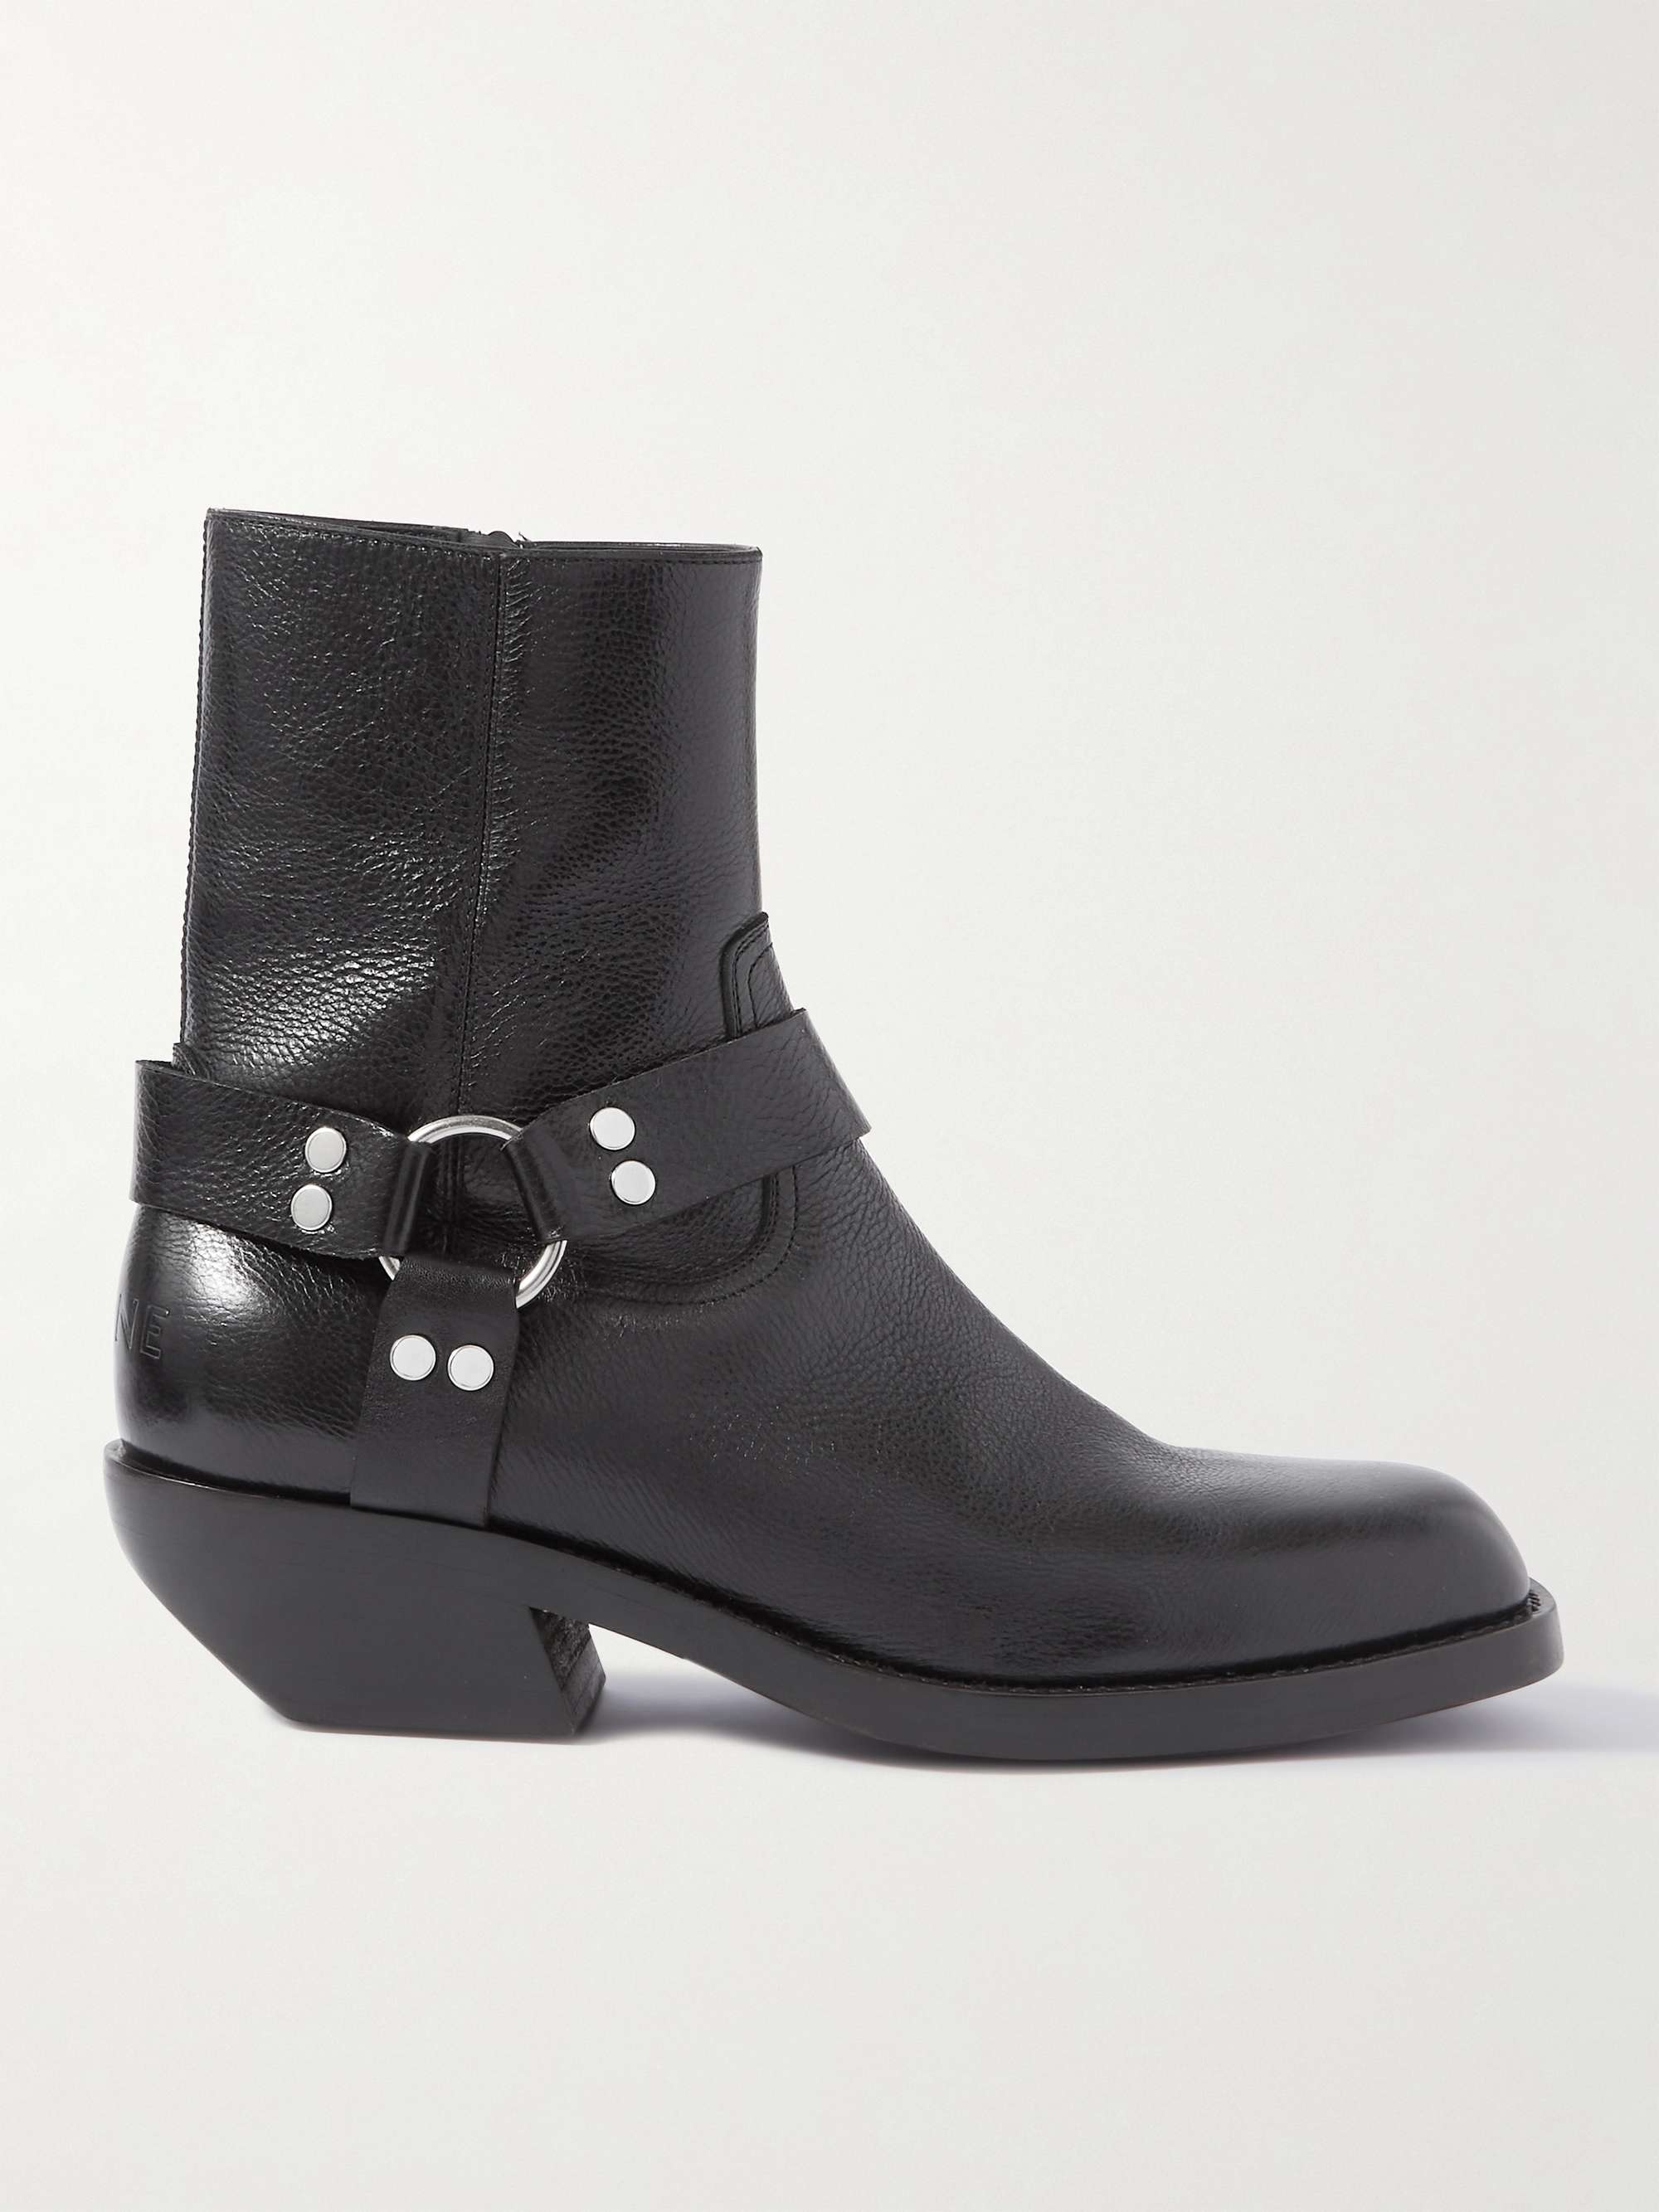 CELINE Embellished Leather Boots